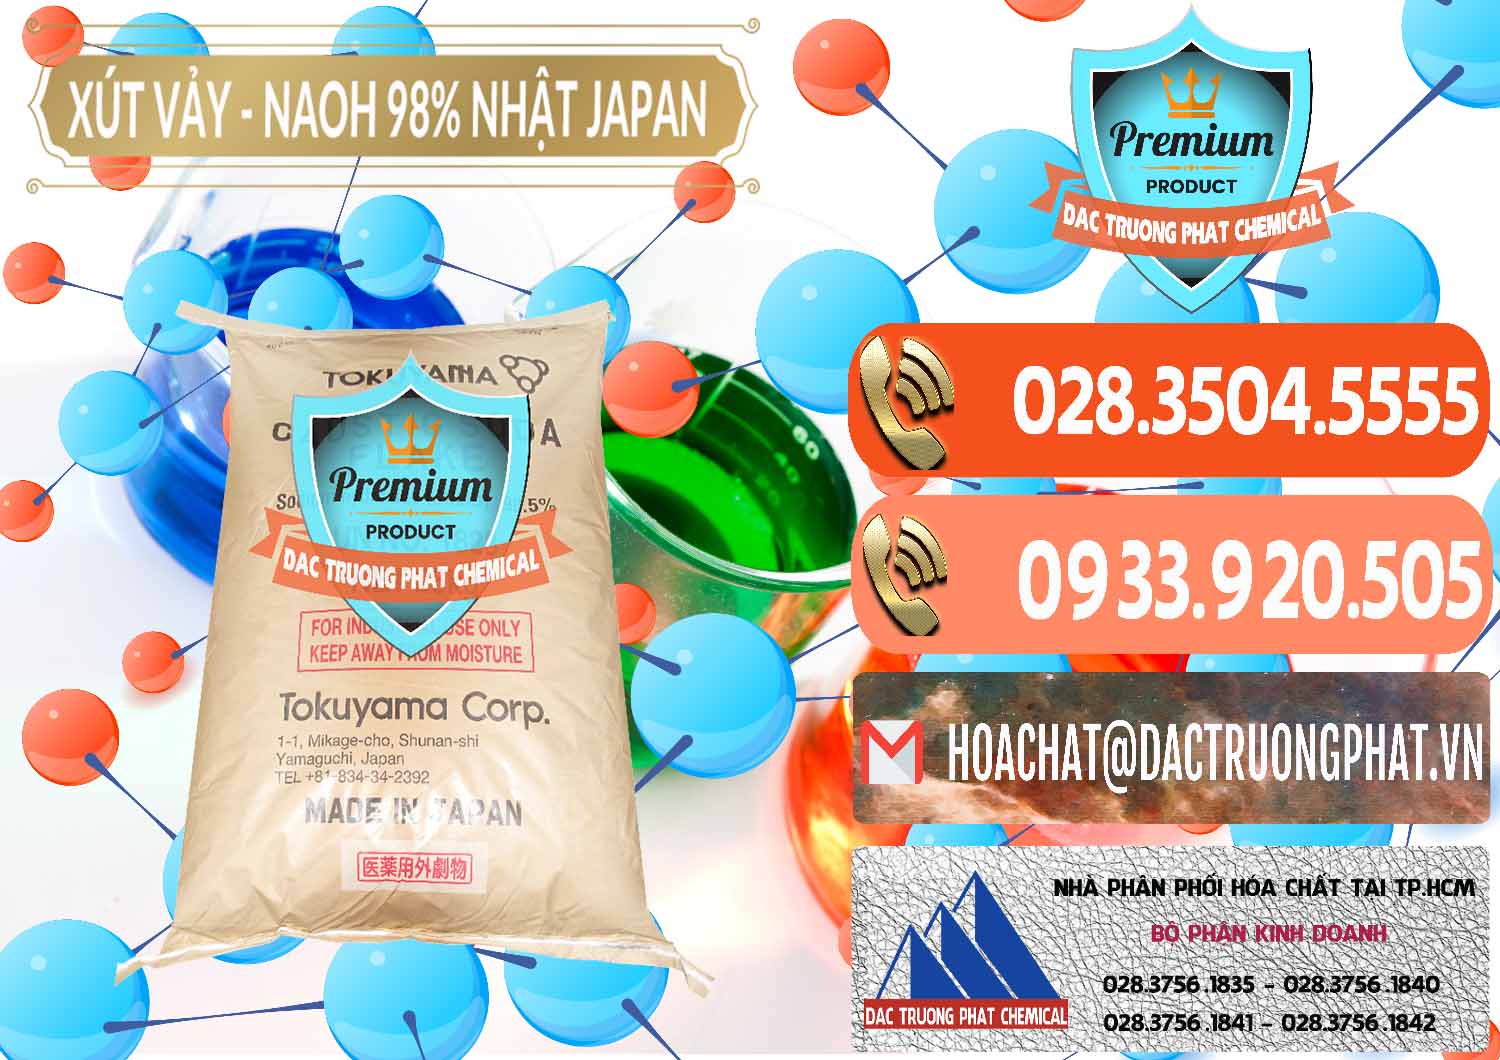 Chuyên bán ( cung ứng ) Xút Vảy - NaOH Vảy 98% Tokuyama Nhật Bản Japan - 0173 - Nơi chuyên bán & cung cấp hóa chất tại TP.HCM - hoachatmientay.com